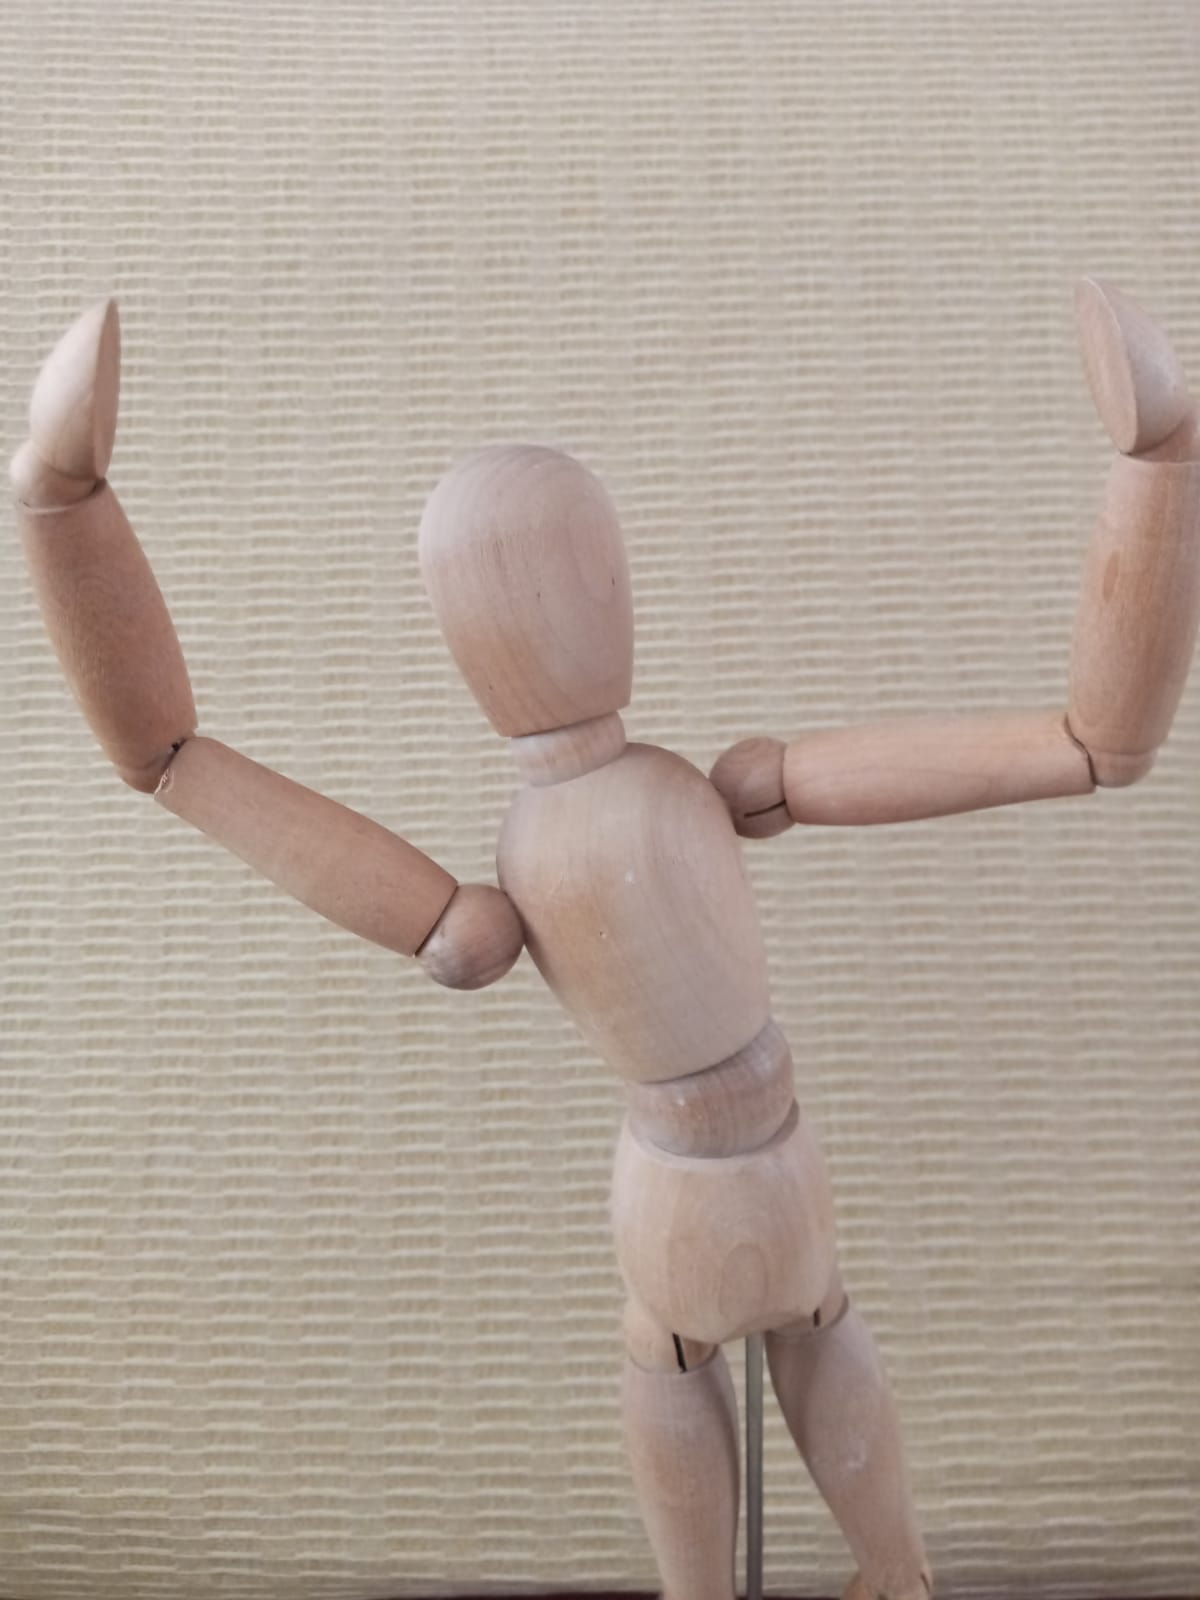 La imagen muestra una figura articulada con los brazos abiertos en alto.